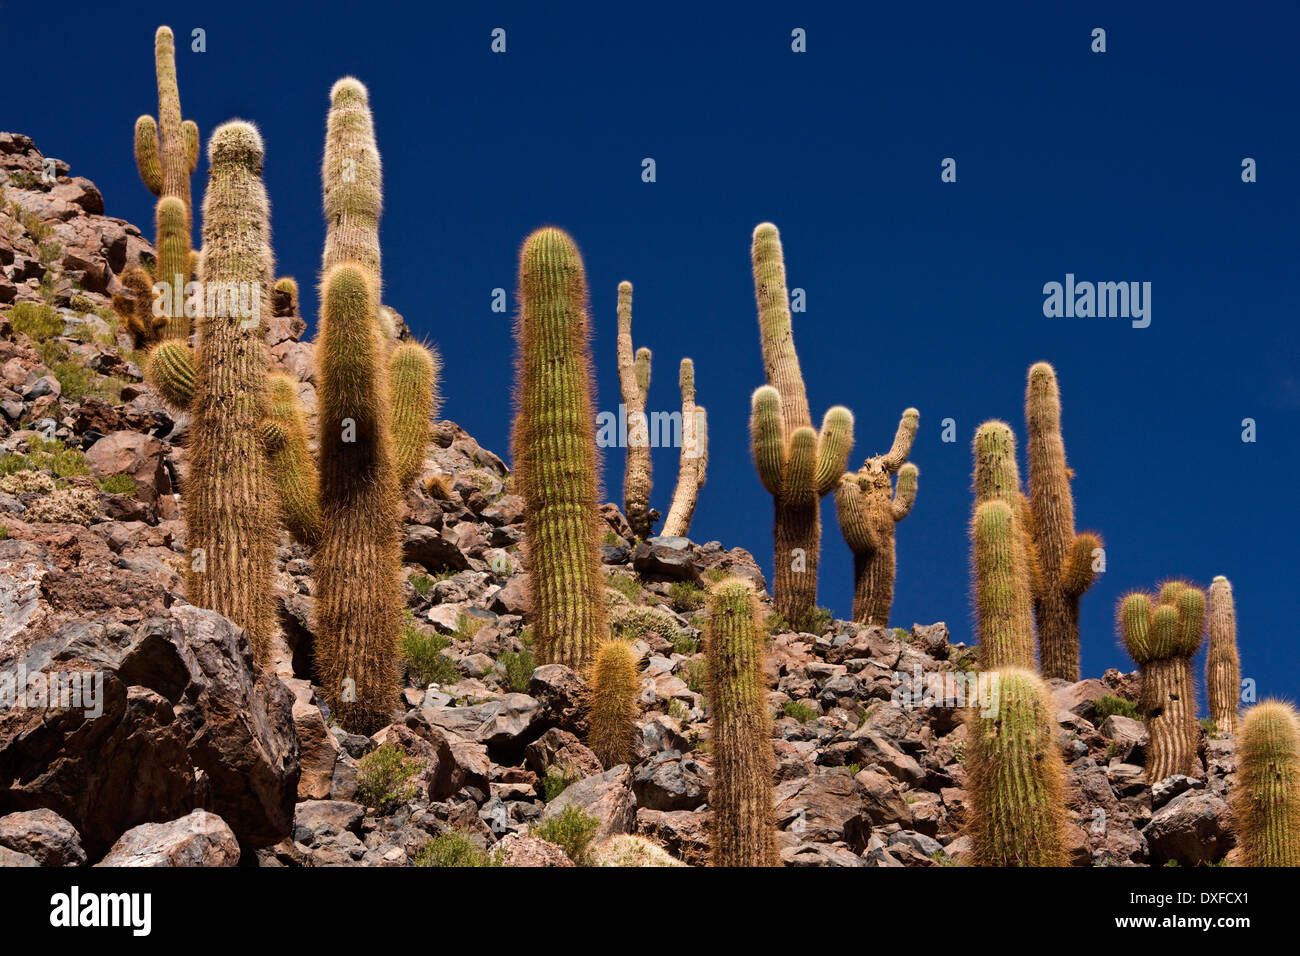 Cardon Grande Cactus growing in Cactus Canyon near San Pedro de Atacama in the Atacama Desert in Northern Chile Stock Photo